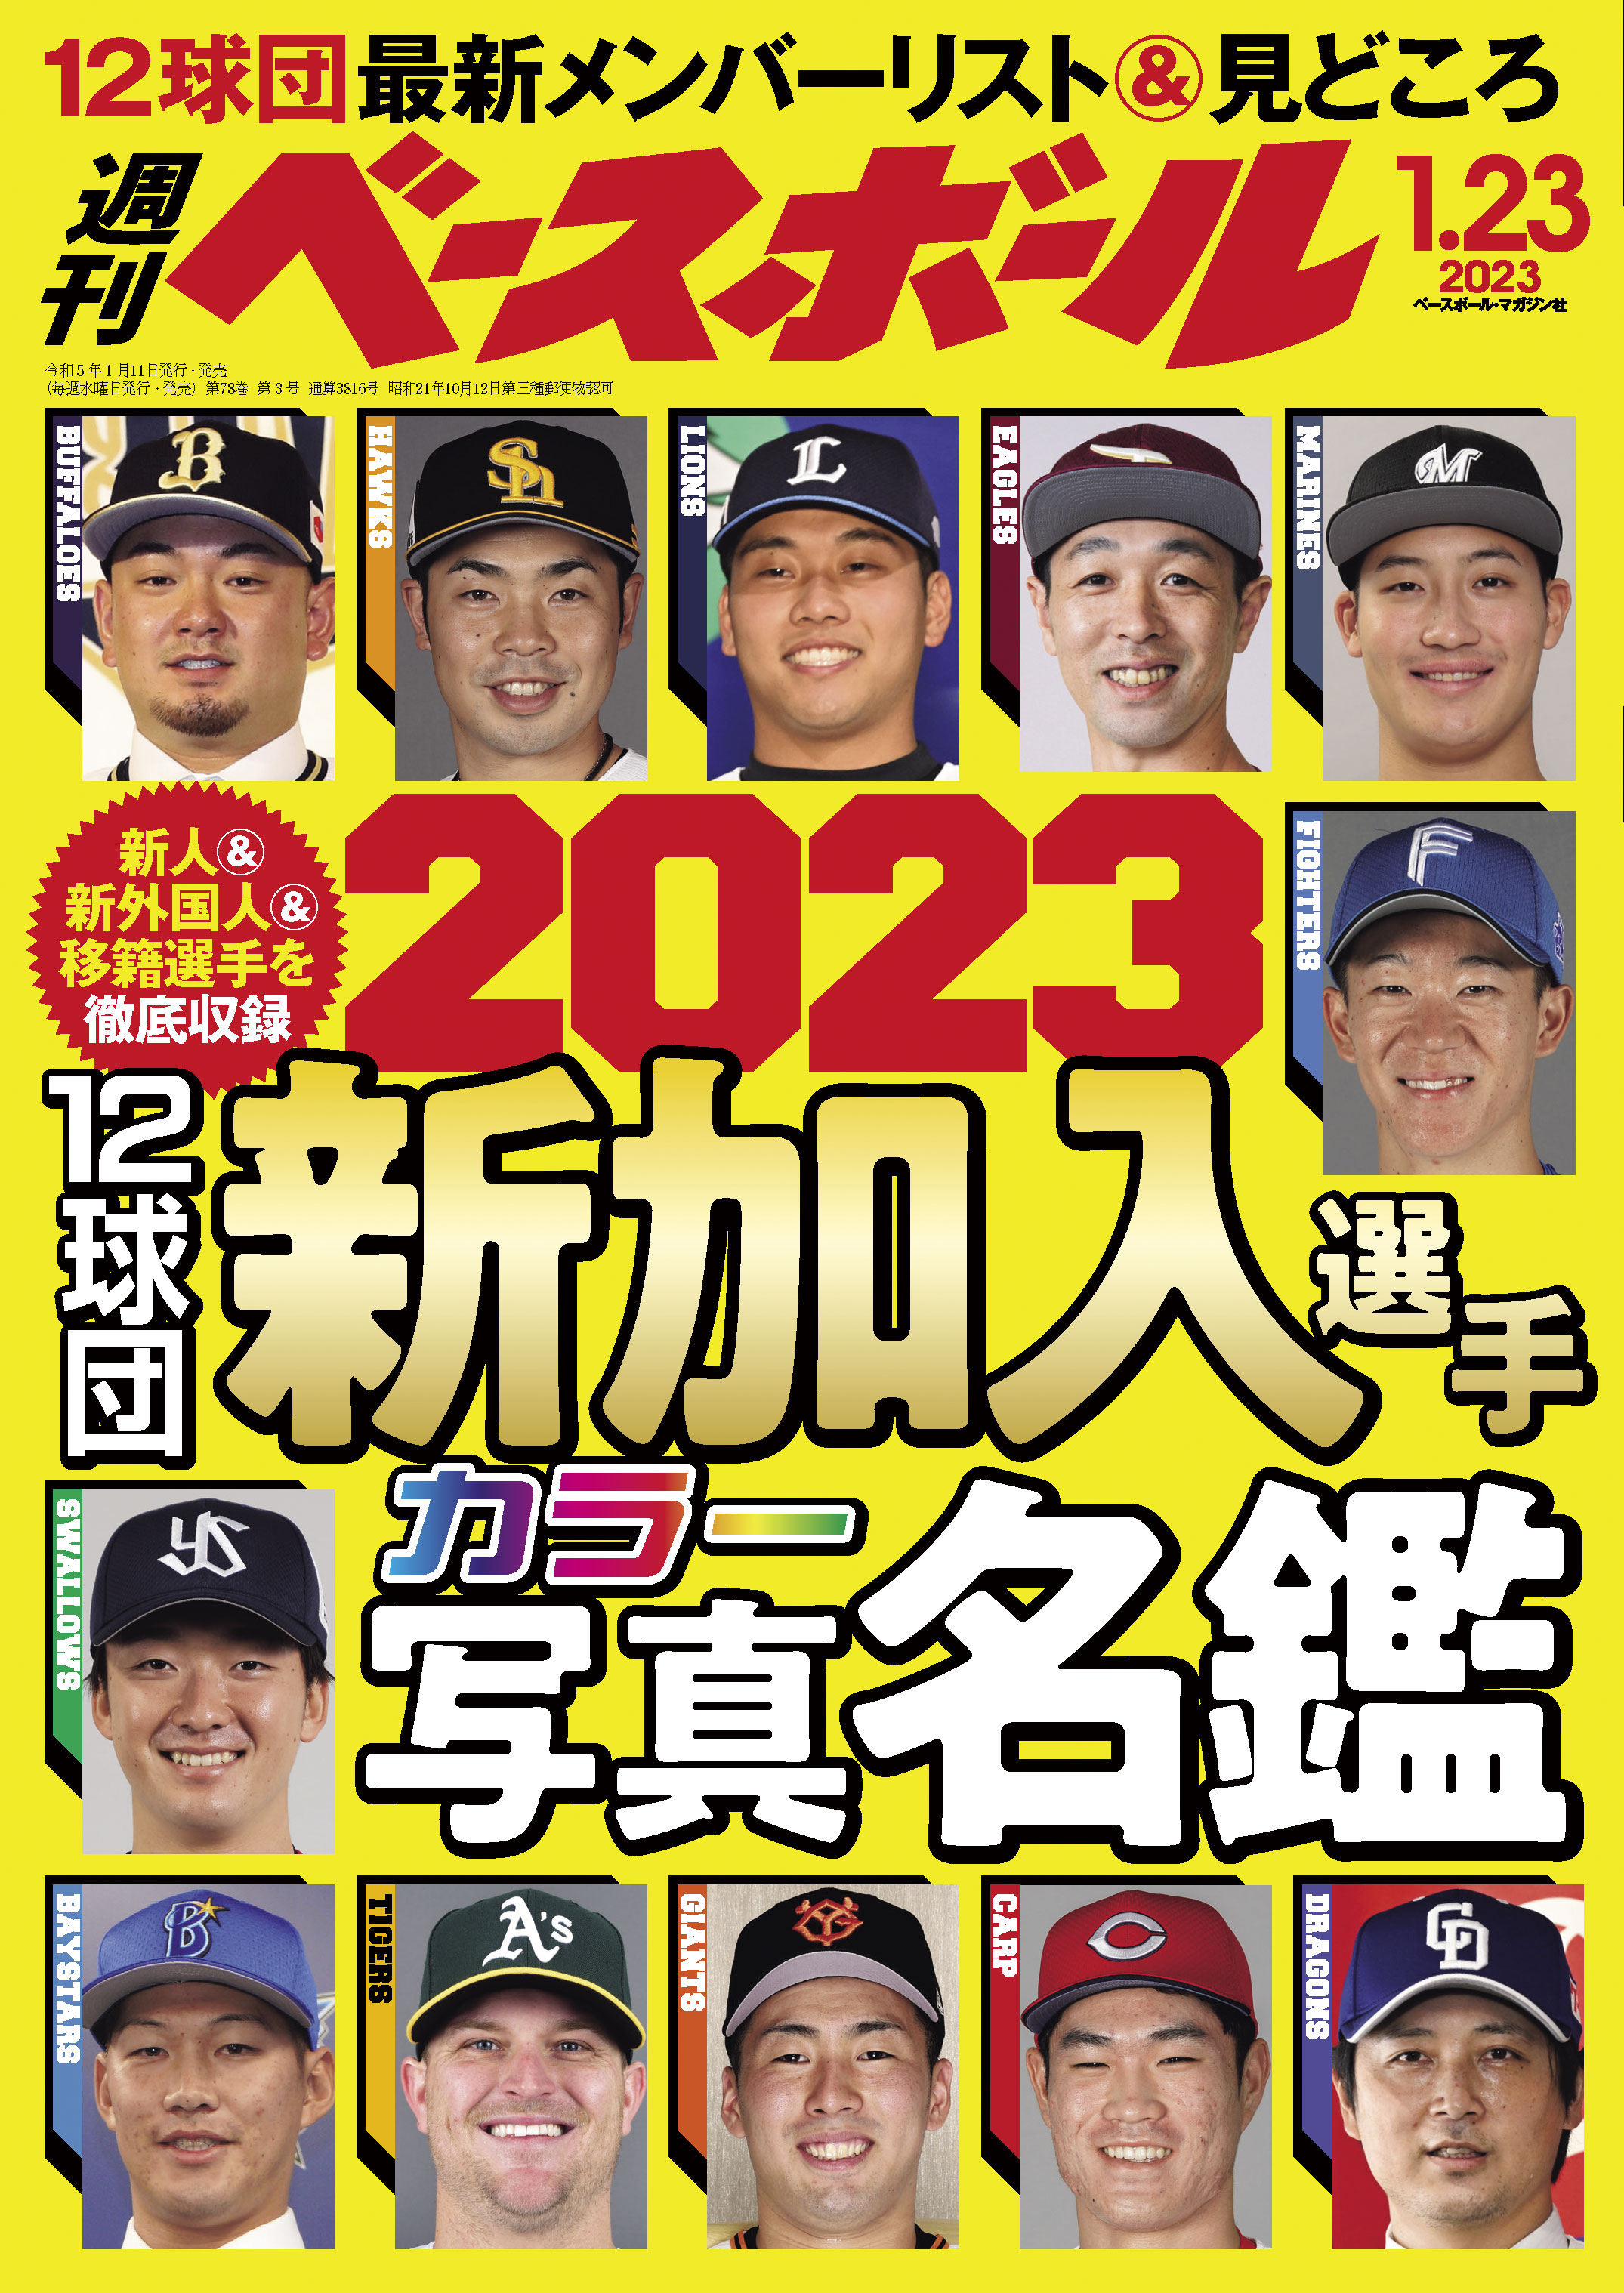 最高級のスーパー最高級のスーパープロ野球ai 2020．7 趣味